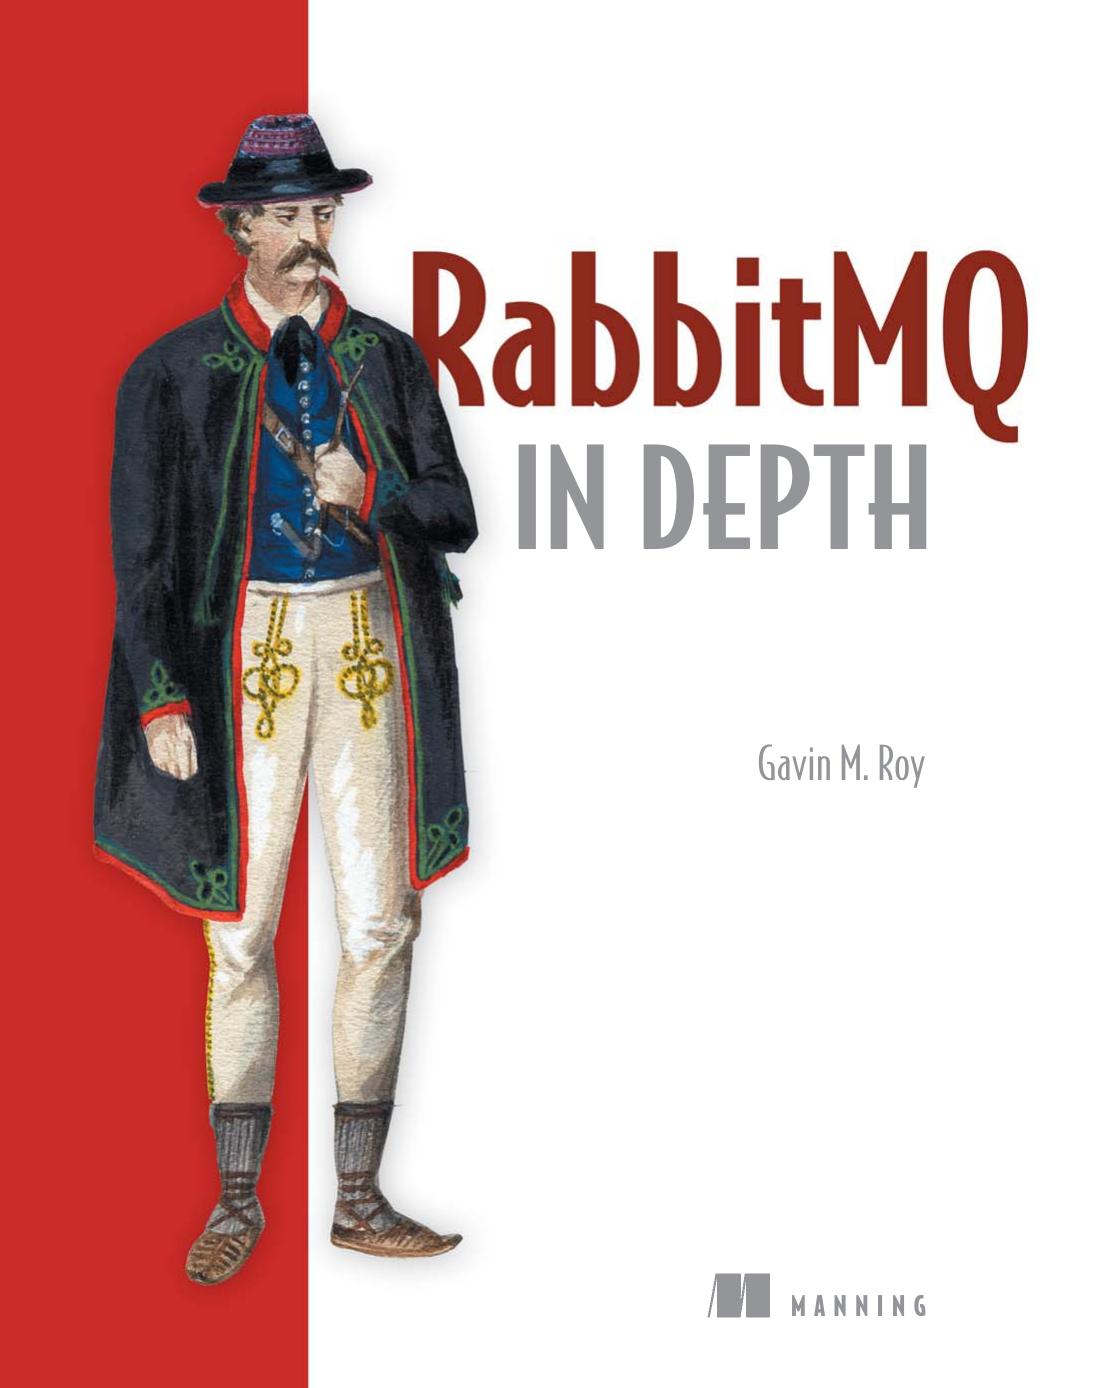 RabbitMQ in Depth by Gavin M. Roy